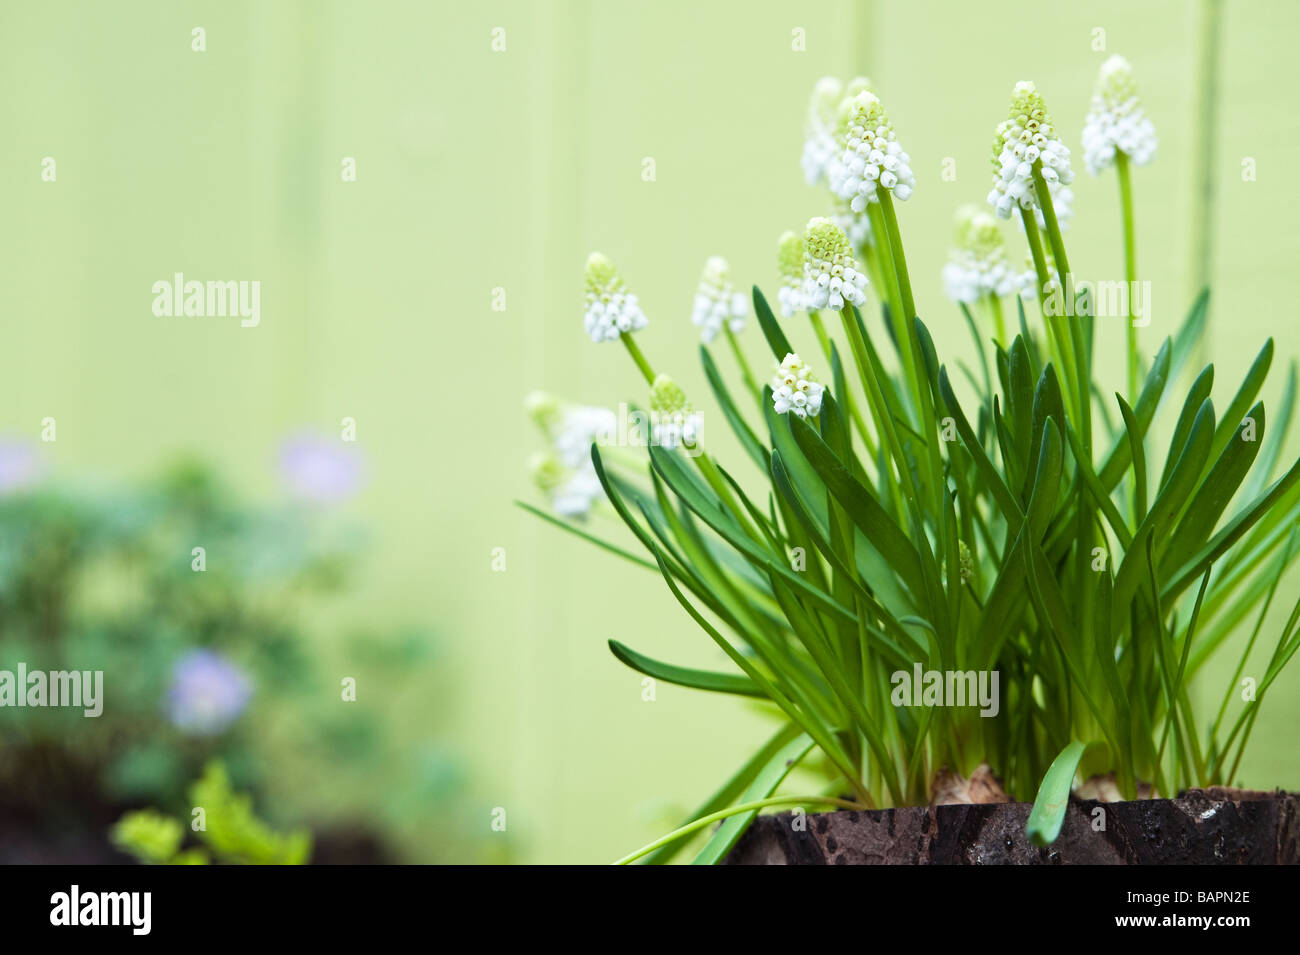 Muscari armericum Album. Weiße Trauben Hyazinthe "Album" Blumen in einem angelegten Garten im Keukenhof, Amsterdam Stockfoto